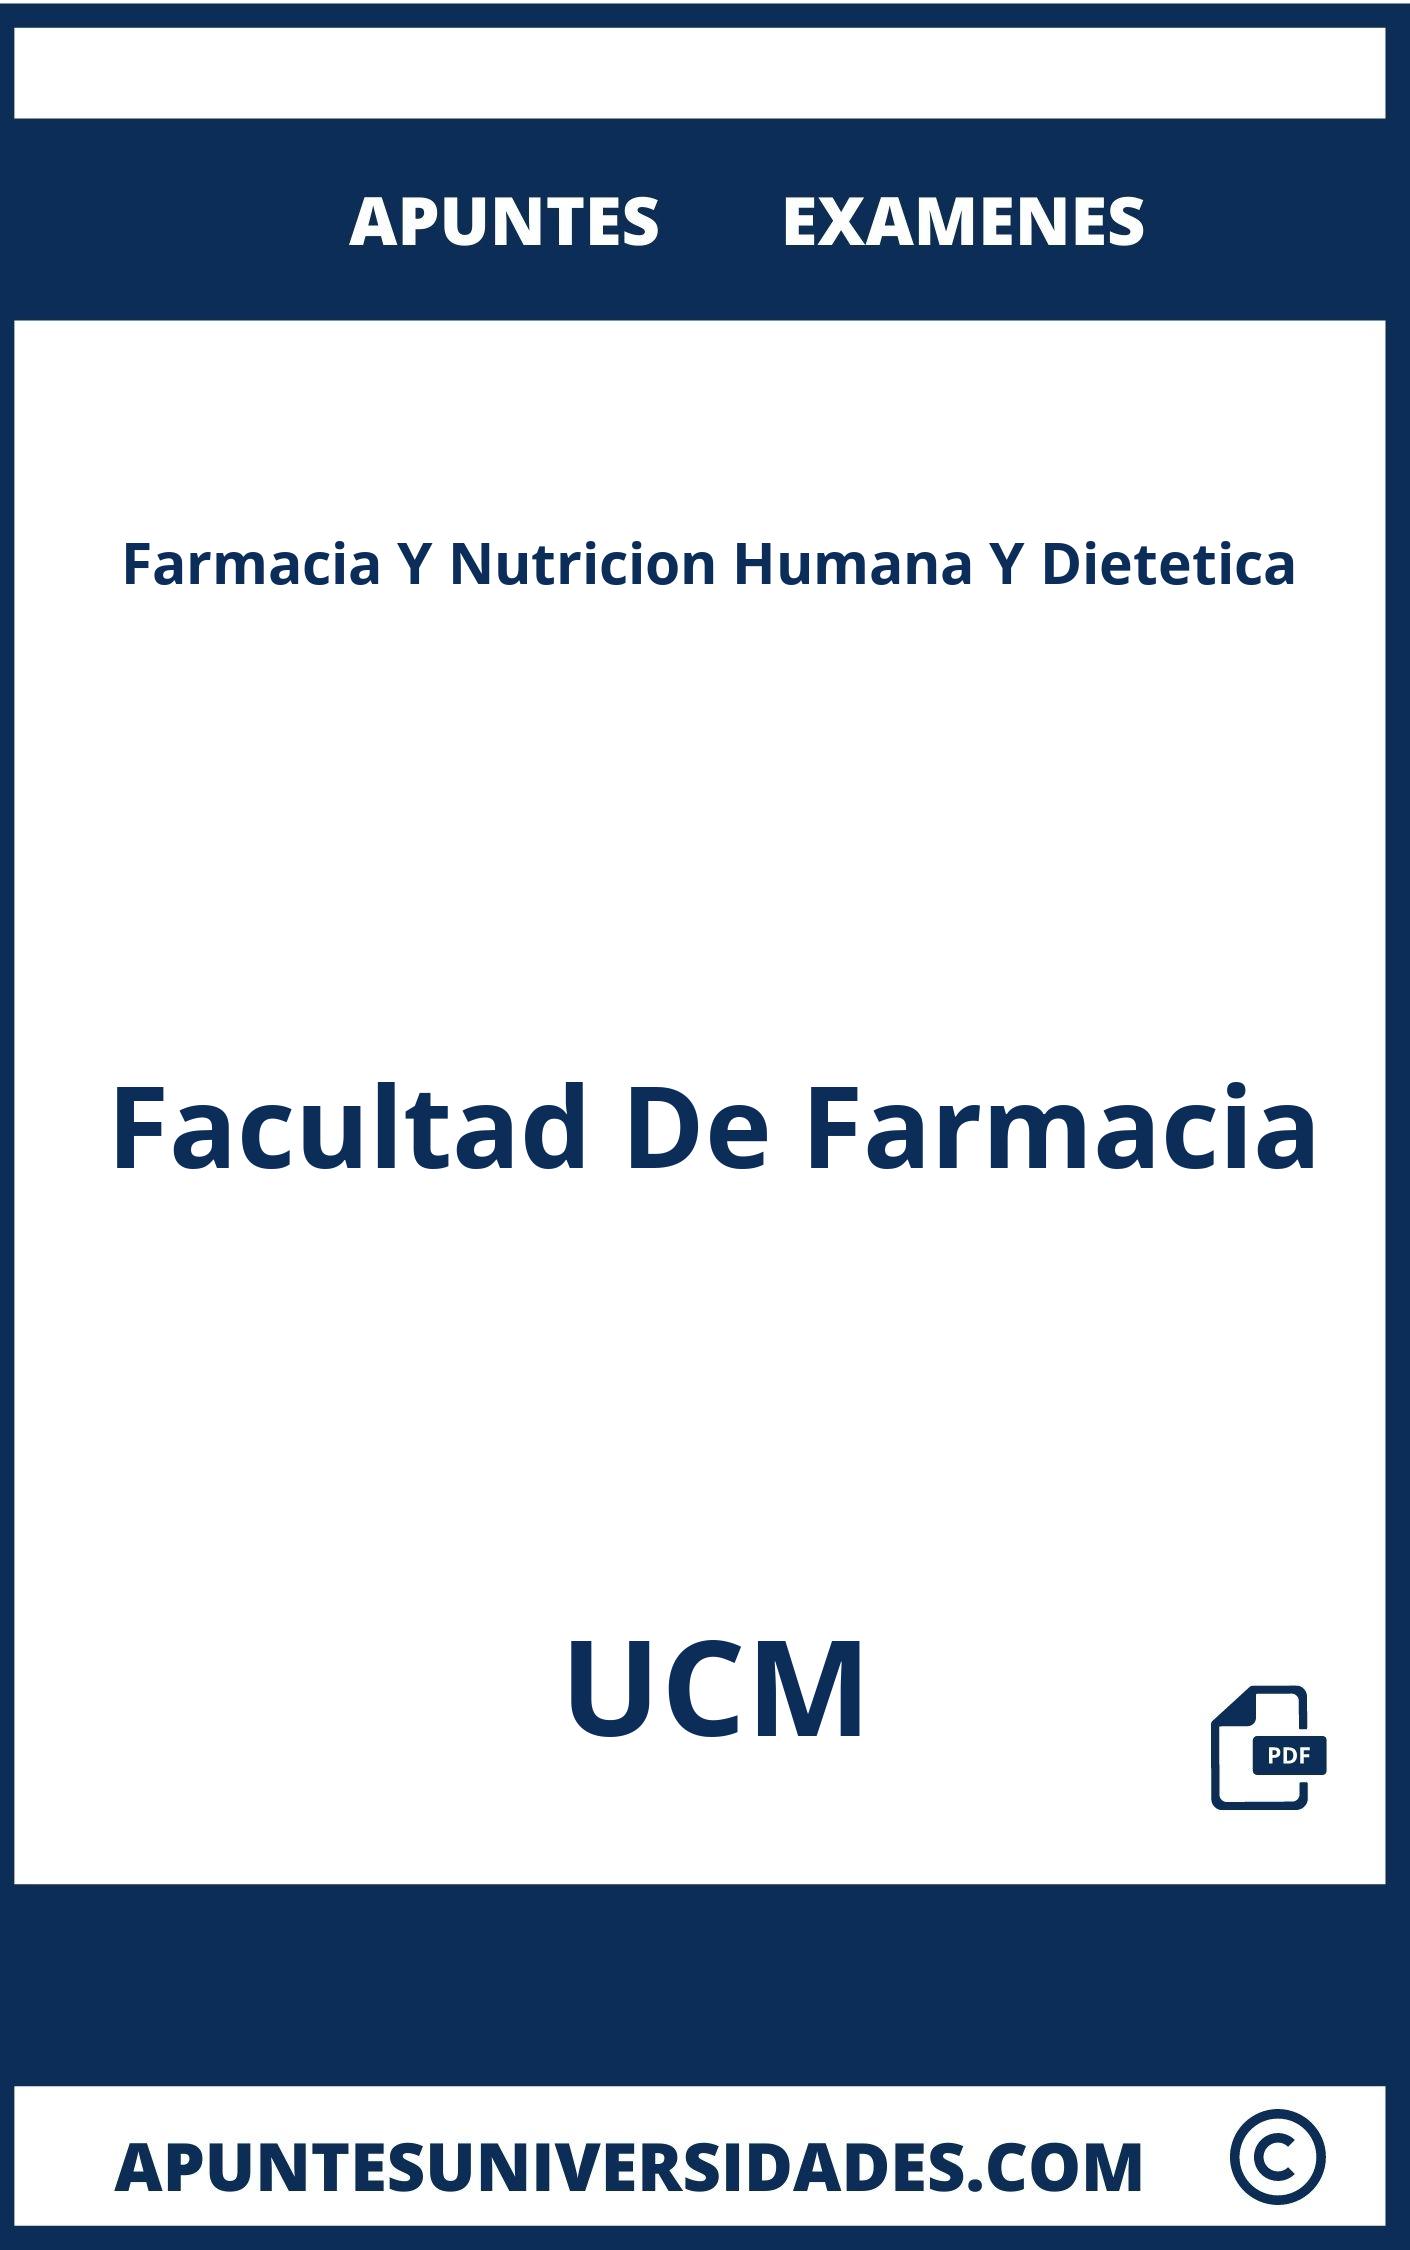 Farmacia Y Nutricion Humana Y Dietetica UCM Apuntes Examenes